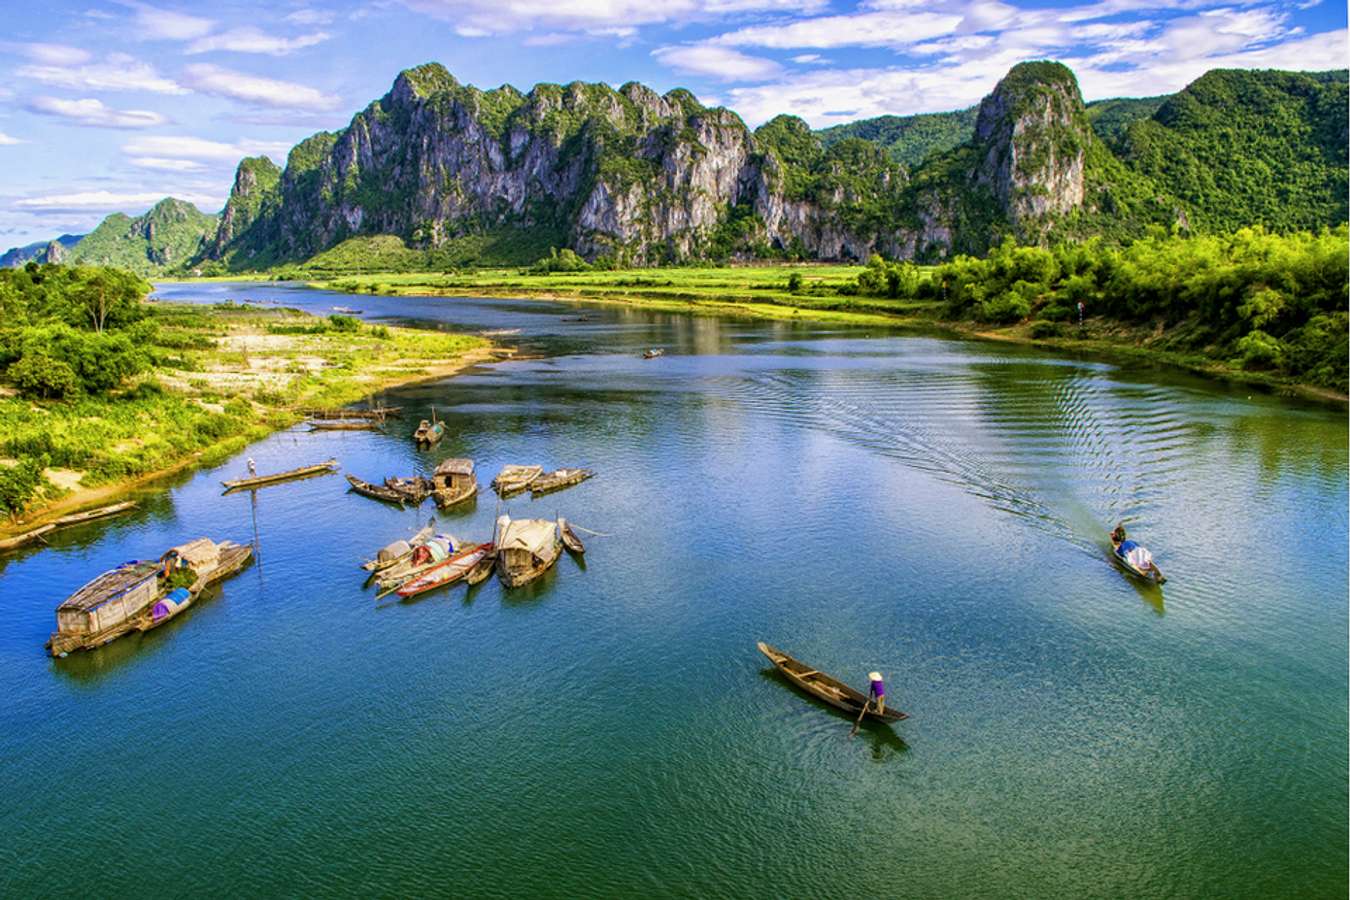 Với những kinh nghiệm du lịch Quảng Bình 2024 giá trị, bạn sẽ được khám phá những địa điểm thú vị và mới lạ. Hãy để chúng tôi giúp bạn tìm hiểu những điểm đến đẹp nhất tại Quảng Bình và tận hưởng một kỳ nghỉ thật ý nghĩa.